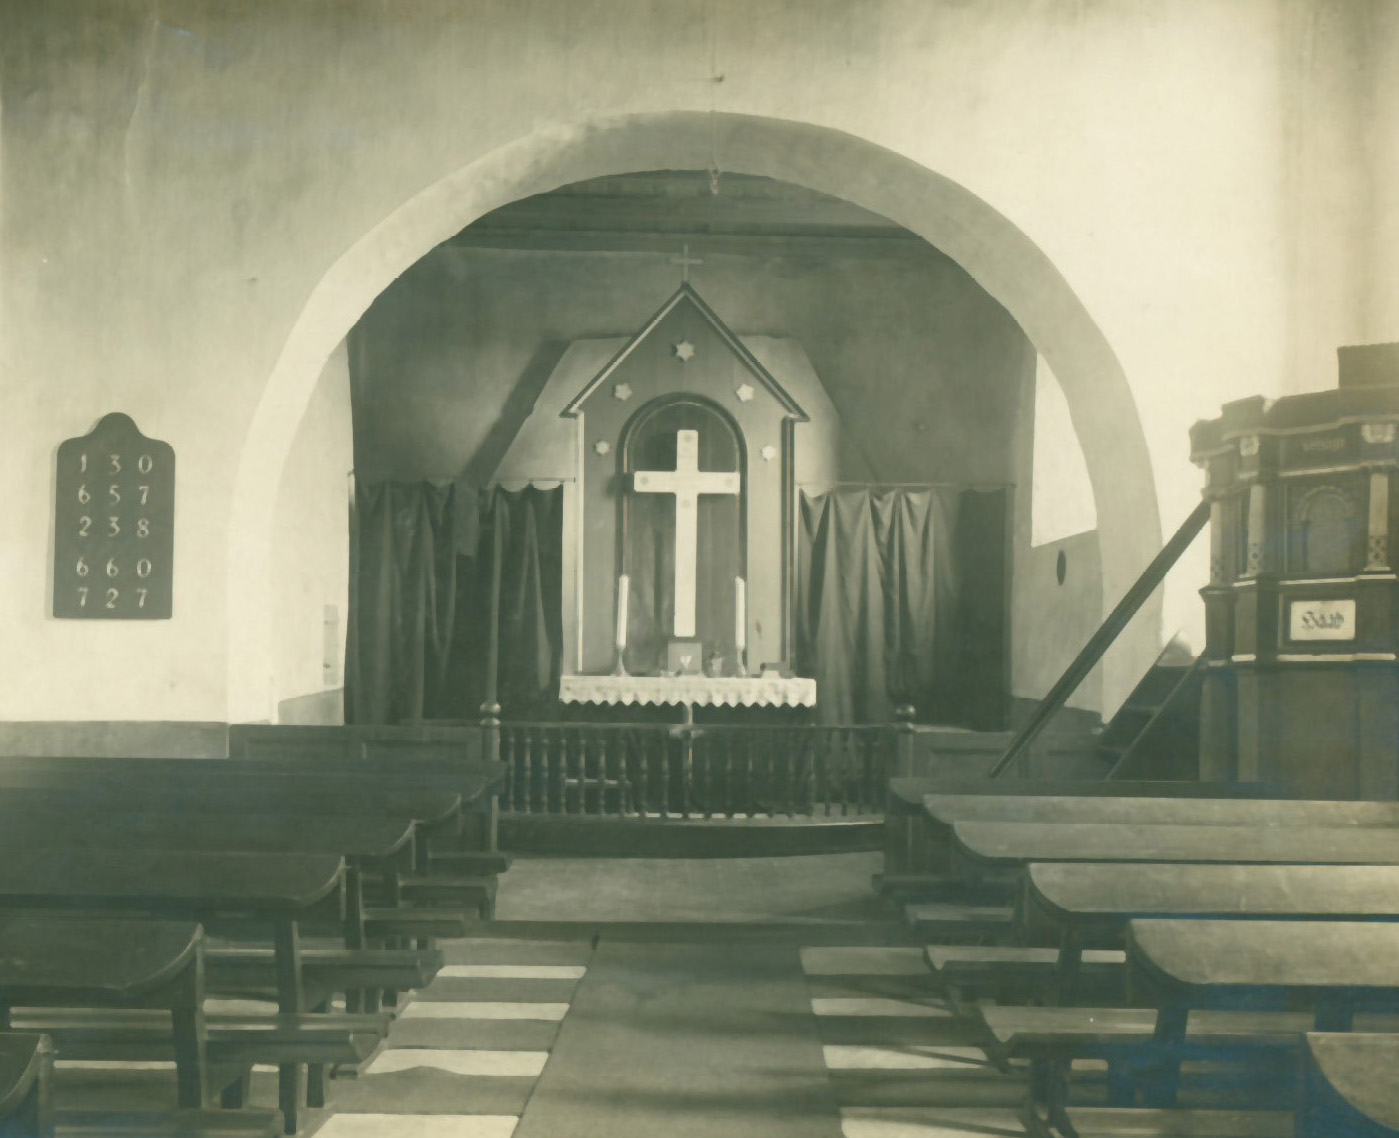 Vind kirkes altertavle, som den så ud indtil 1926.